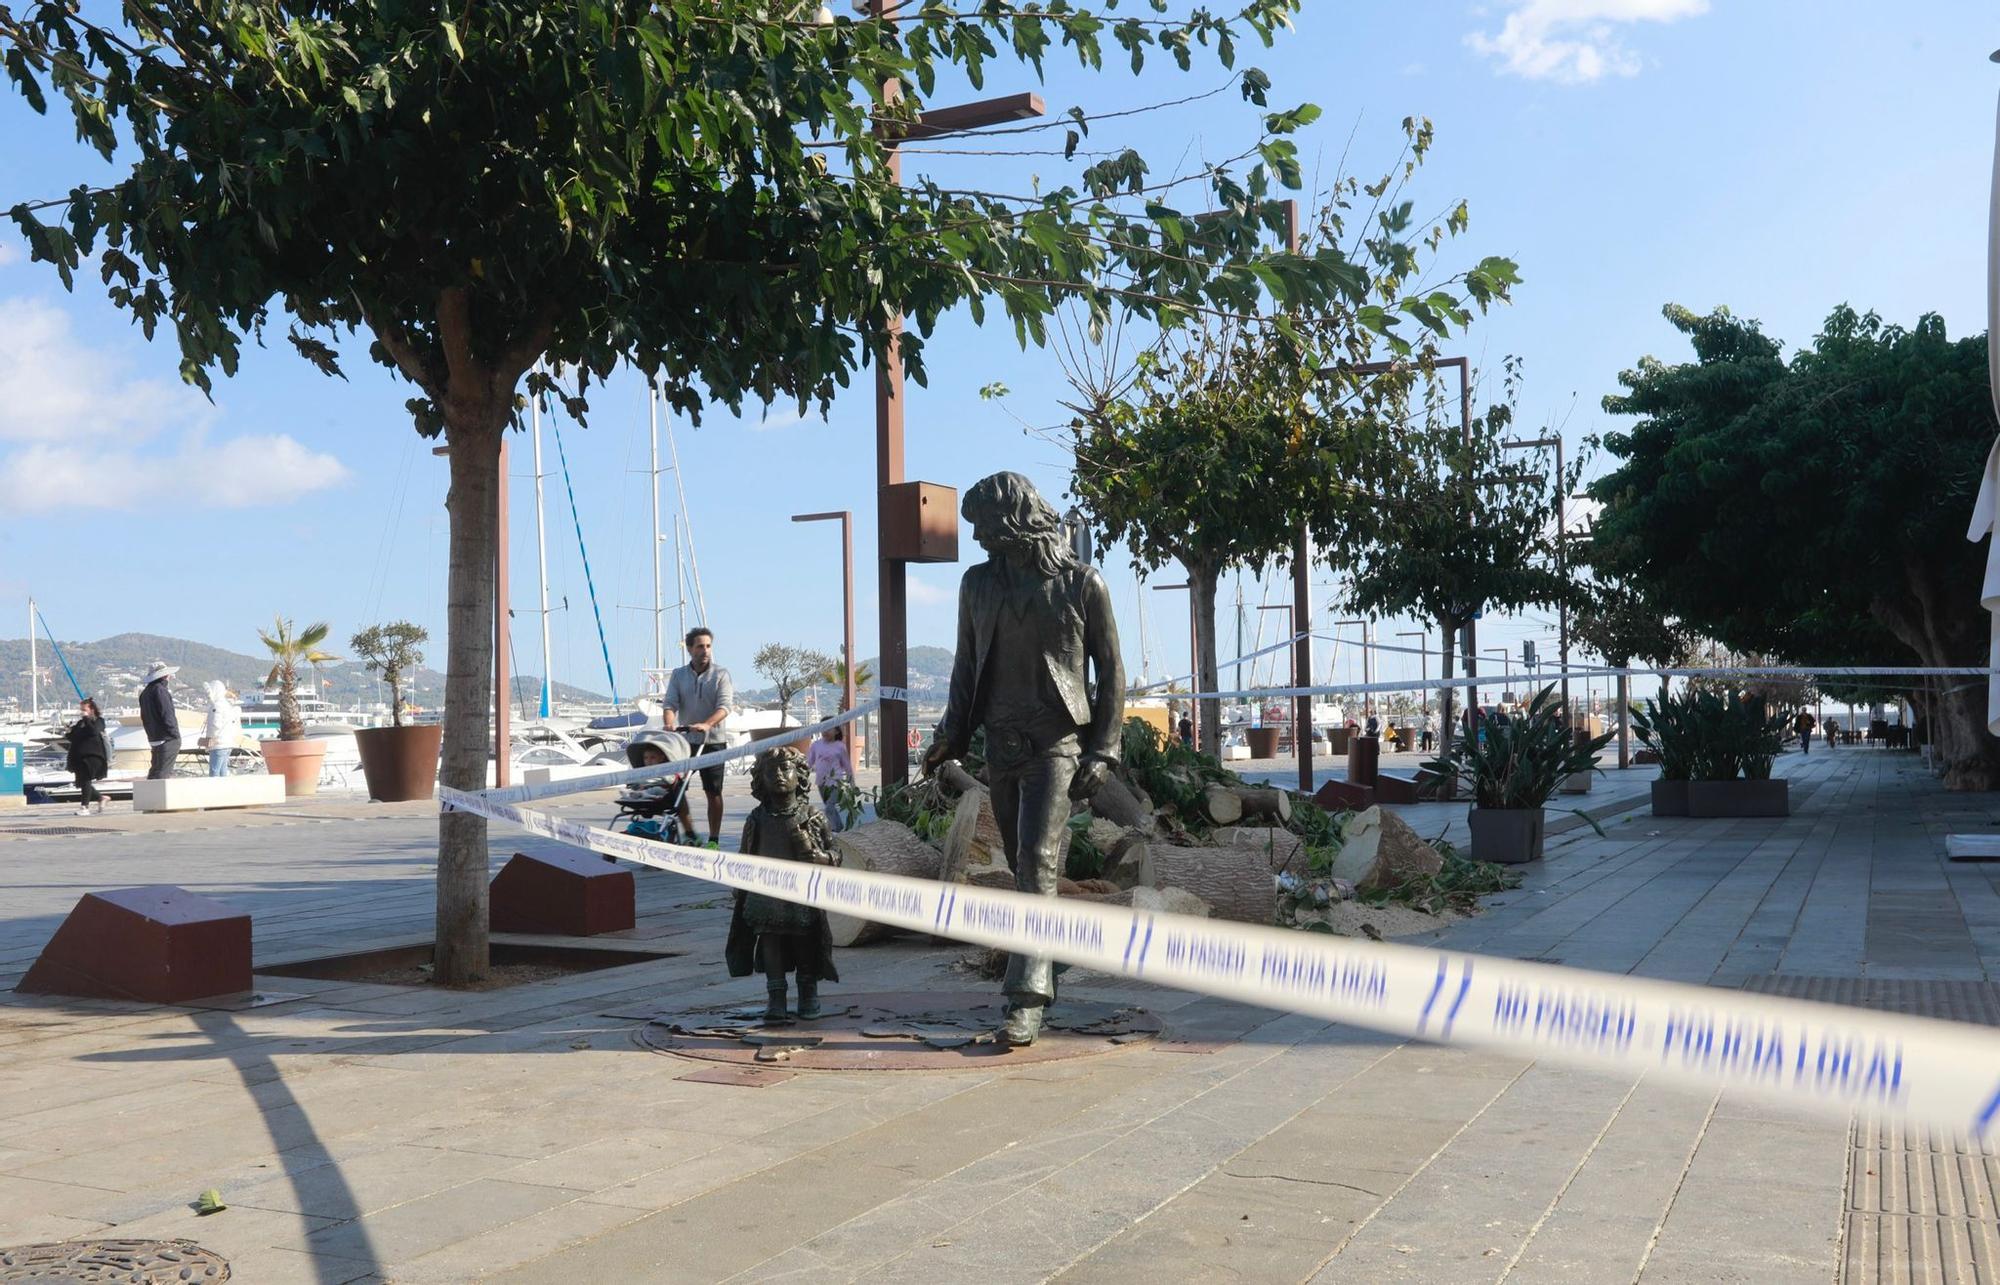 Cae un árbol en el puerto de Ibiza